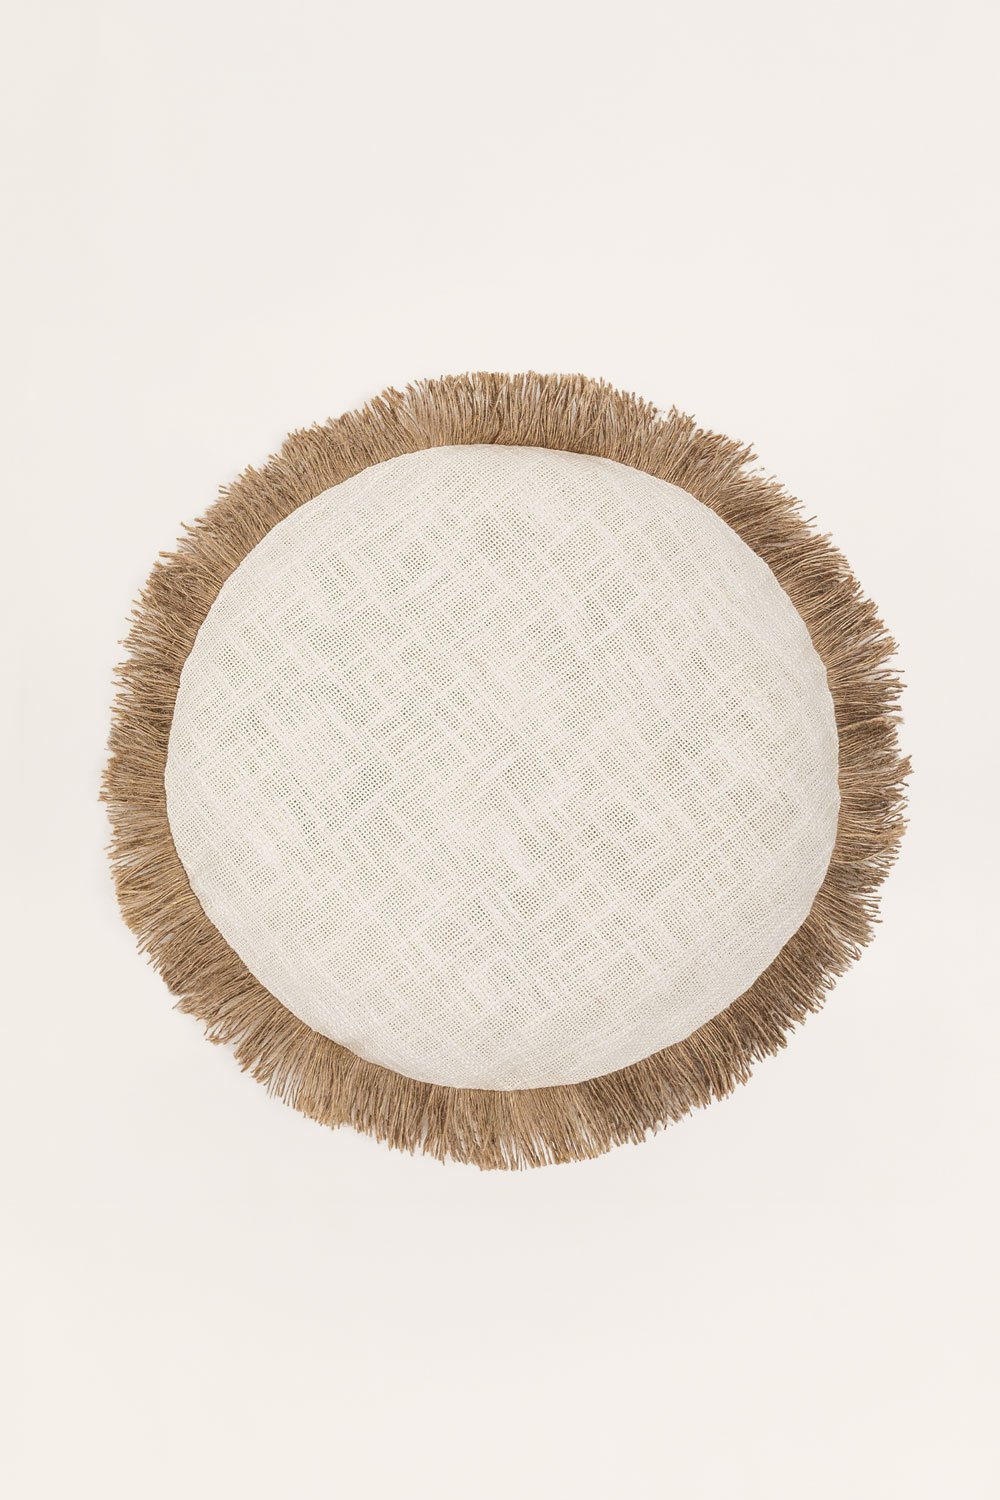 Cuscino rotondo in cotone (Ø40 cm) Paraiba, immagine della galleria 1